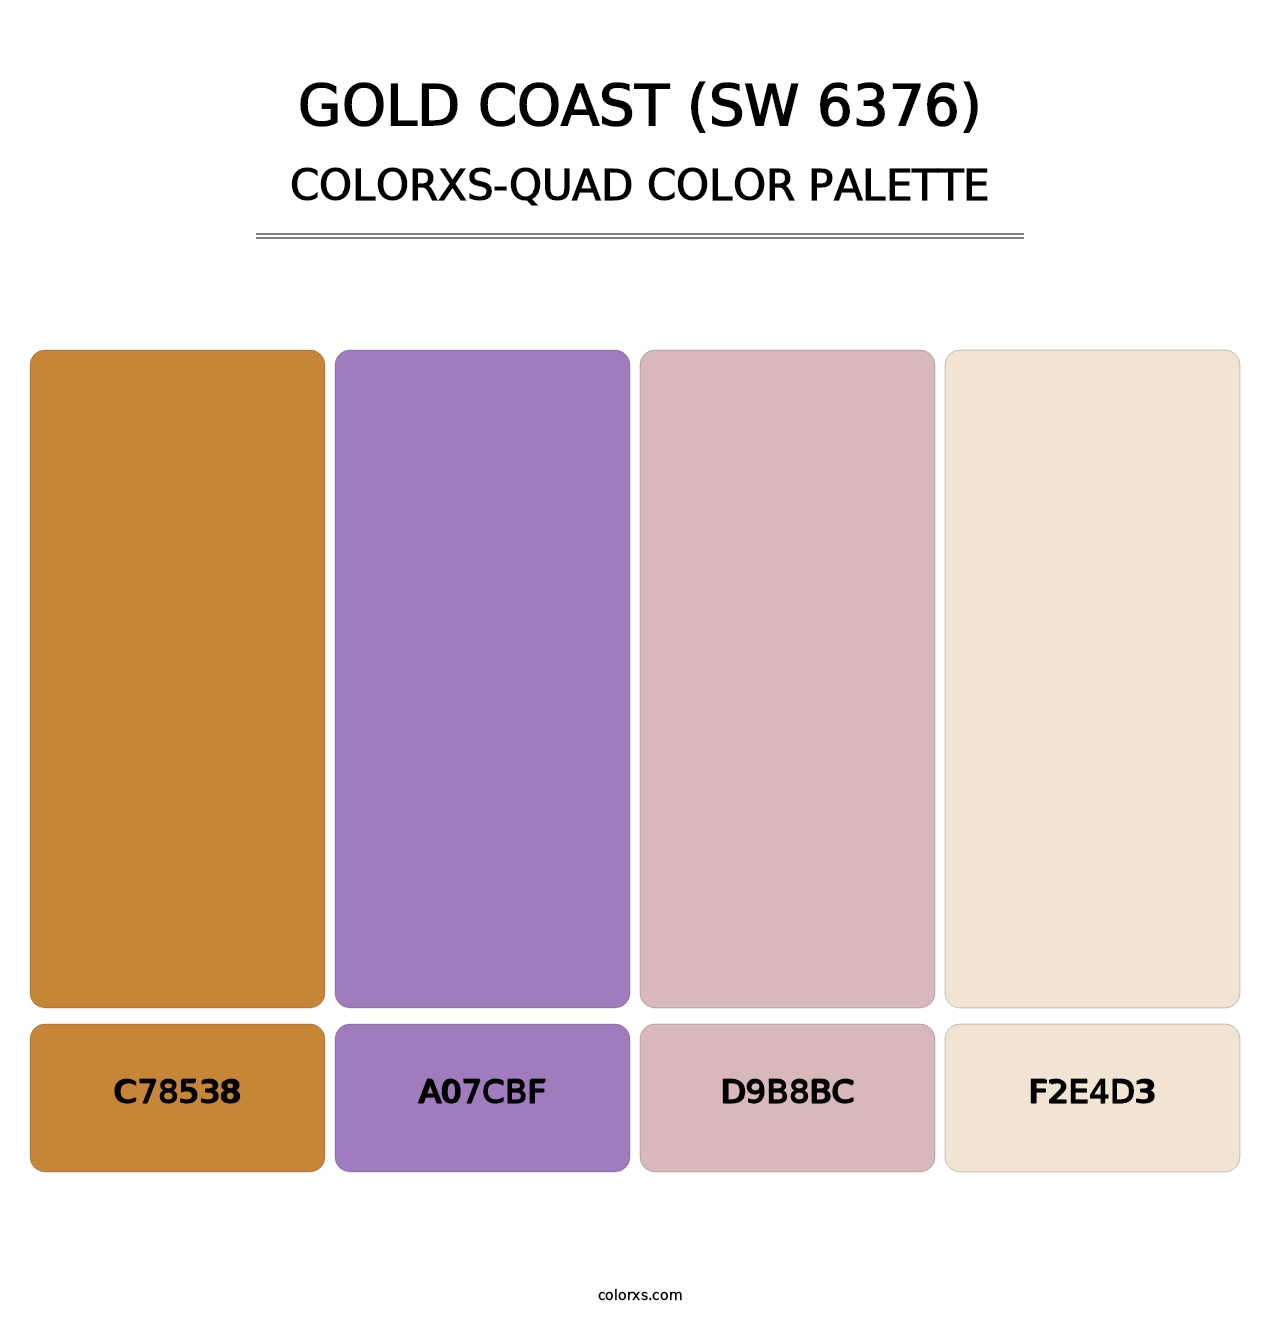 Gold Coast (SW 6376) - Colorxs Quad Palette